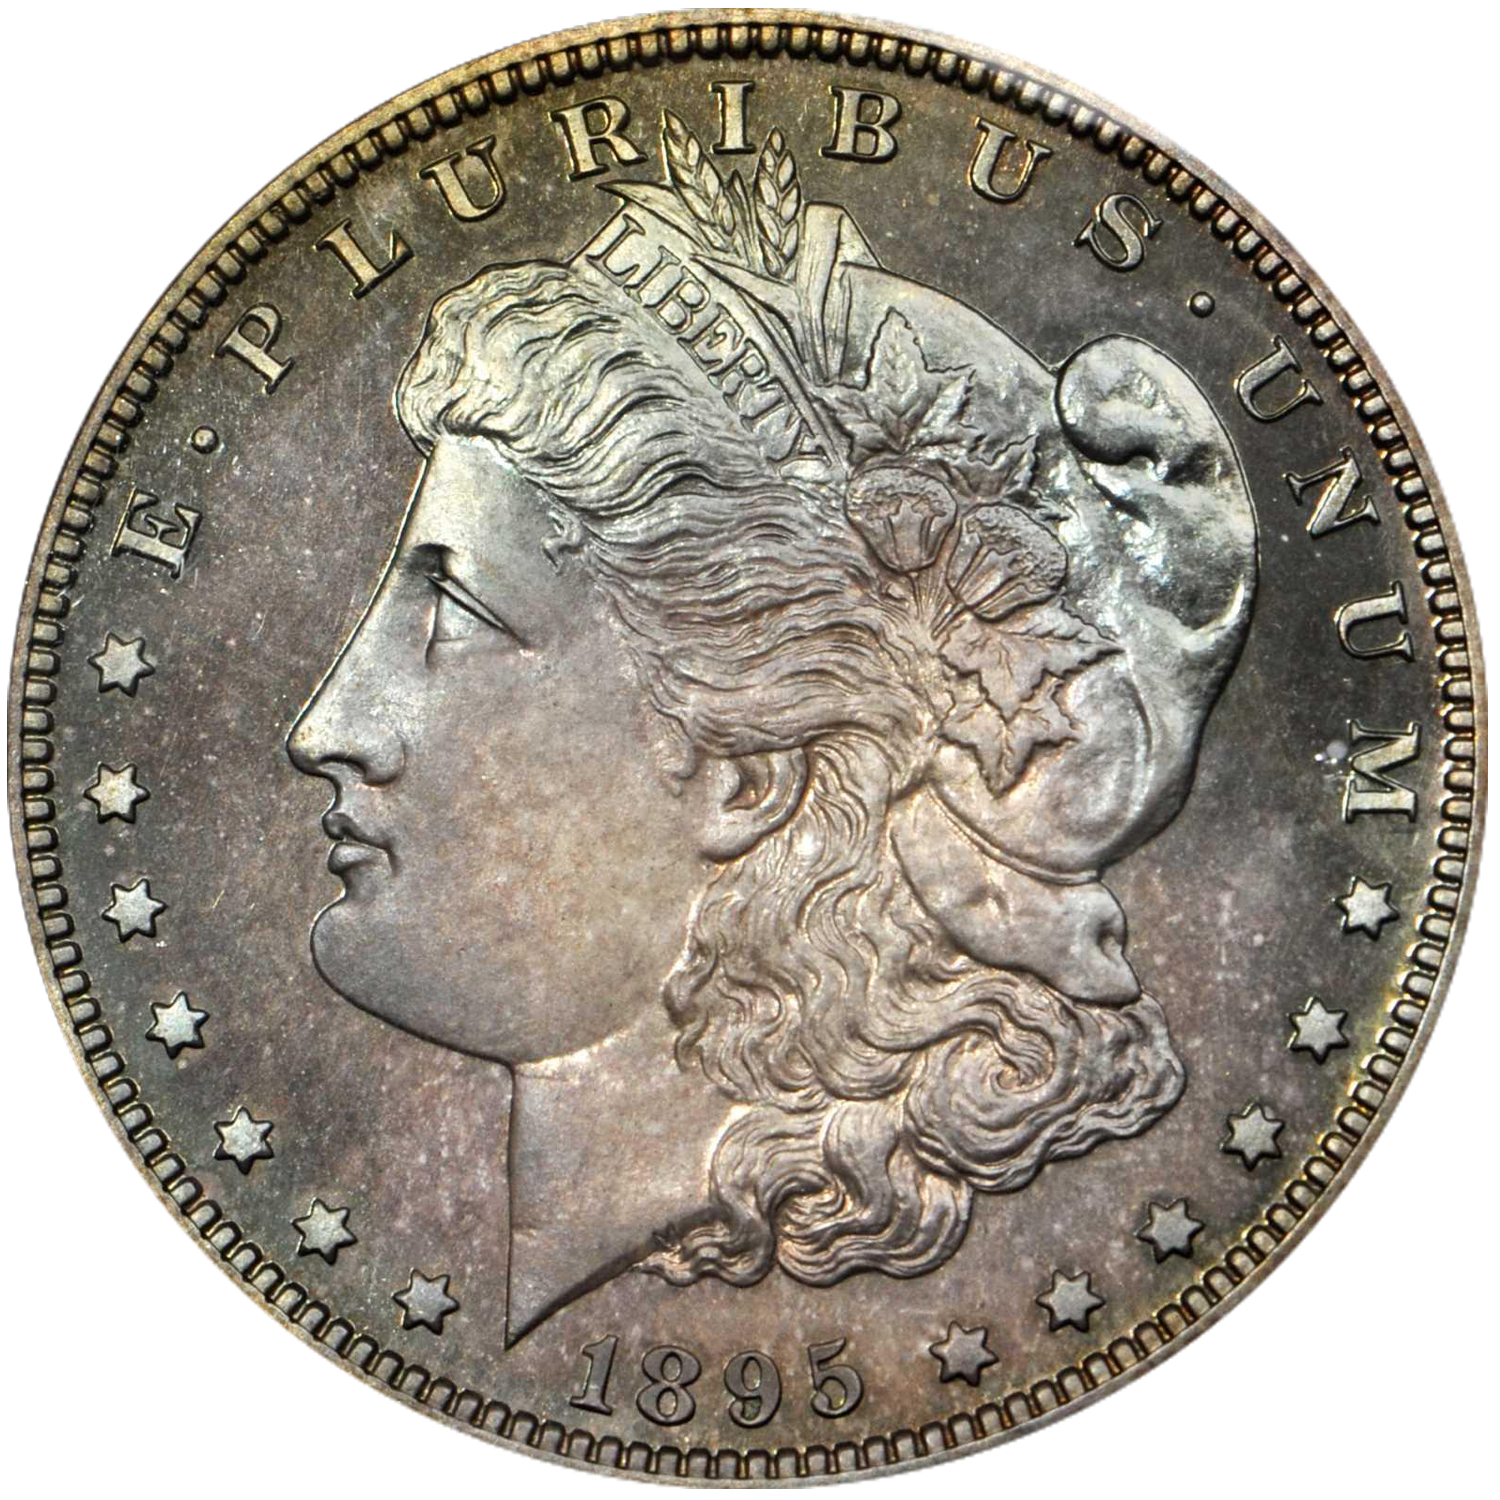 1895 p morgan dollar value guide